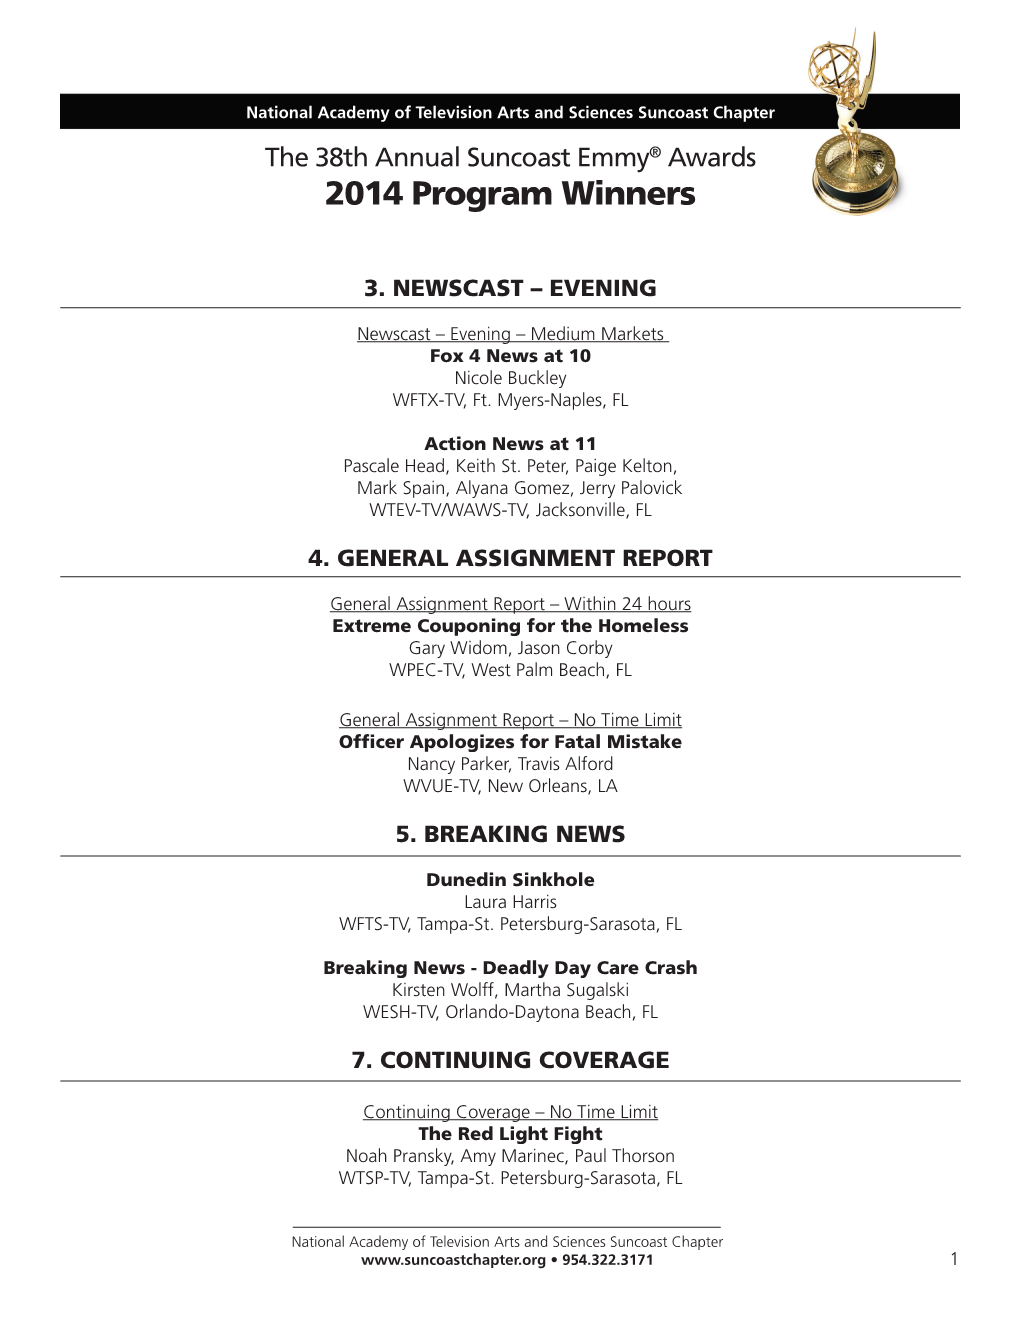 2014 Program Winners